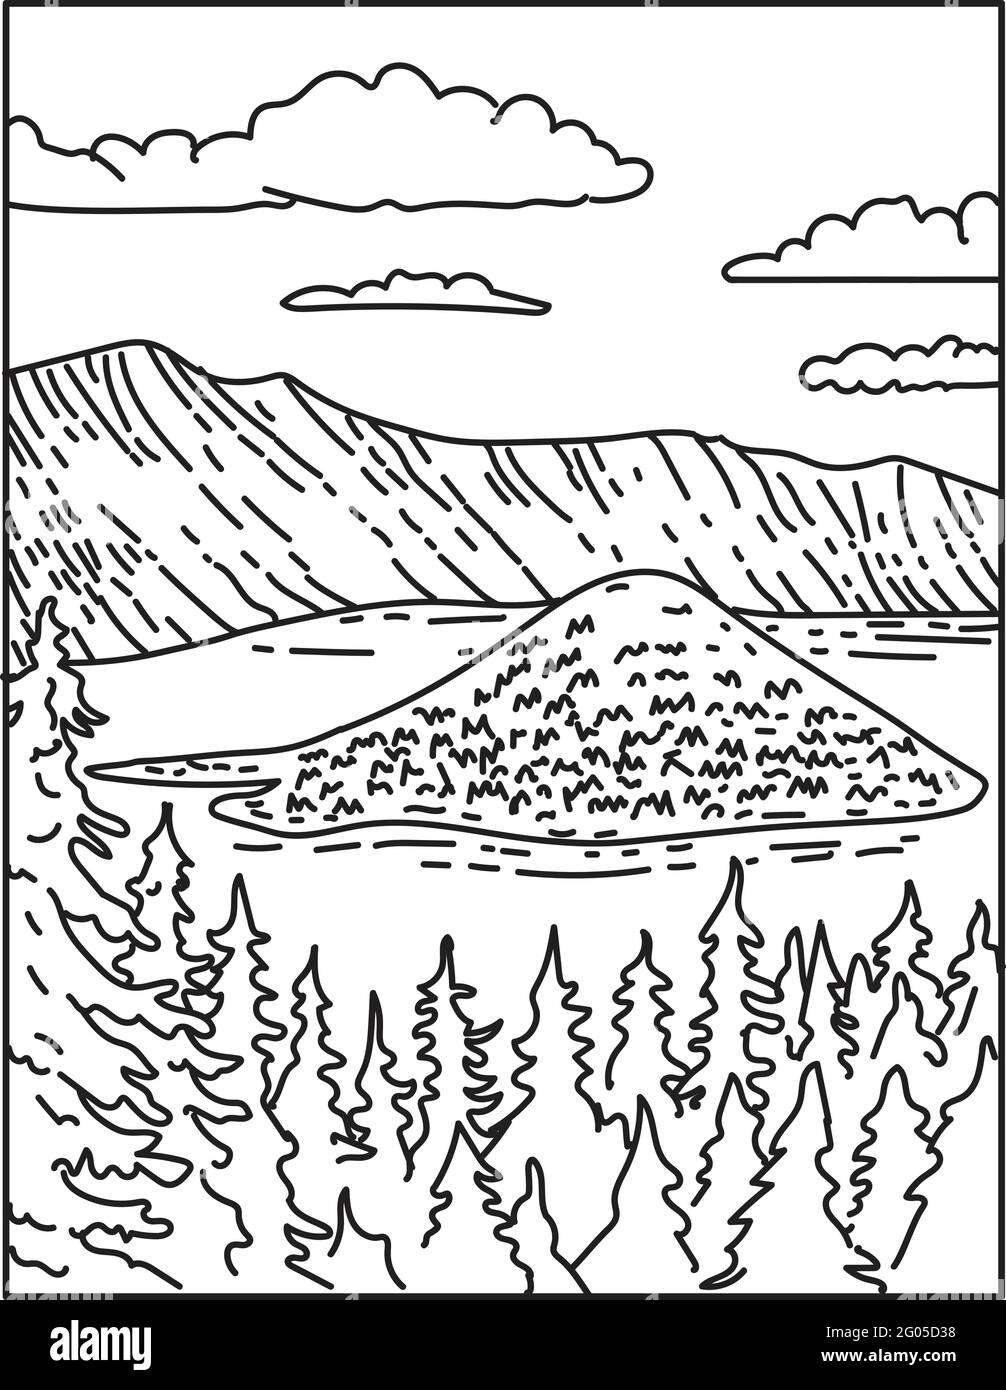 Illustrazione monolinea del Crater Lake all'interno del Crater Lake National Park situato nel centro-sud dell'Oregon, Stati Uniti d'America fatto in retro blac Illustrazione Vettoriale